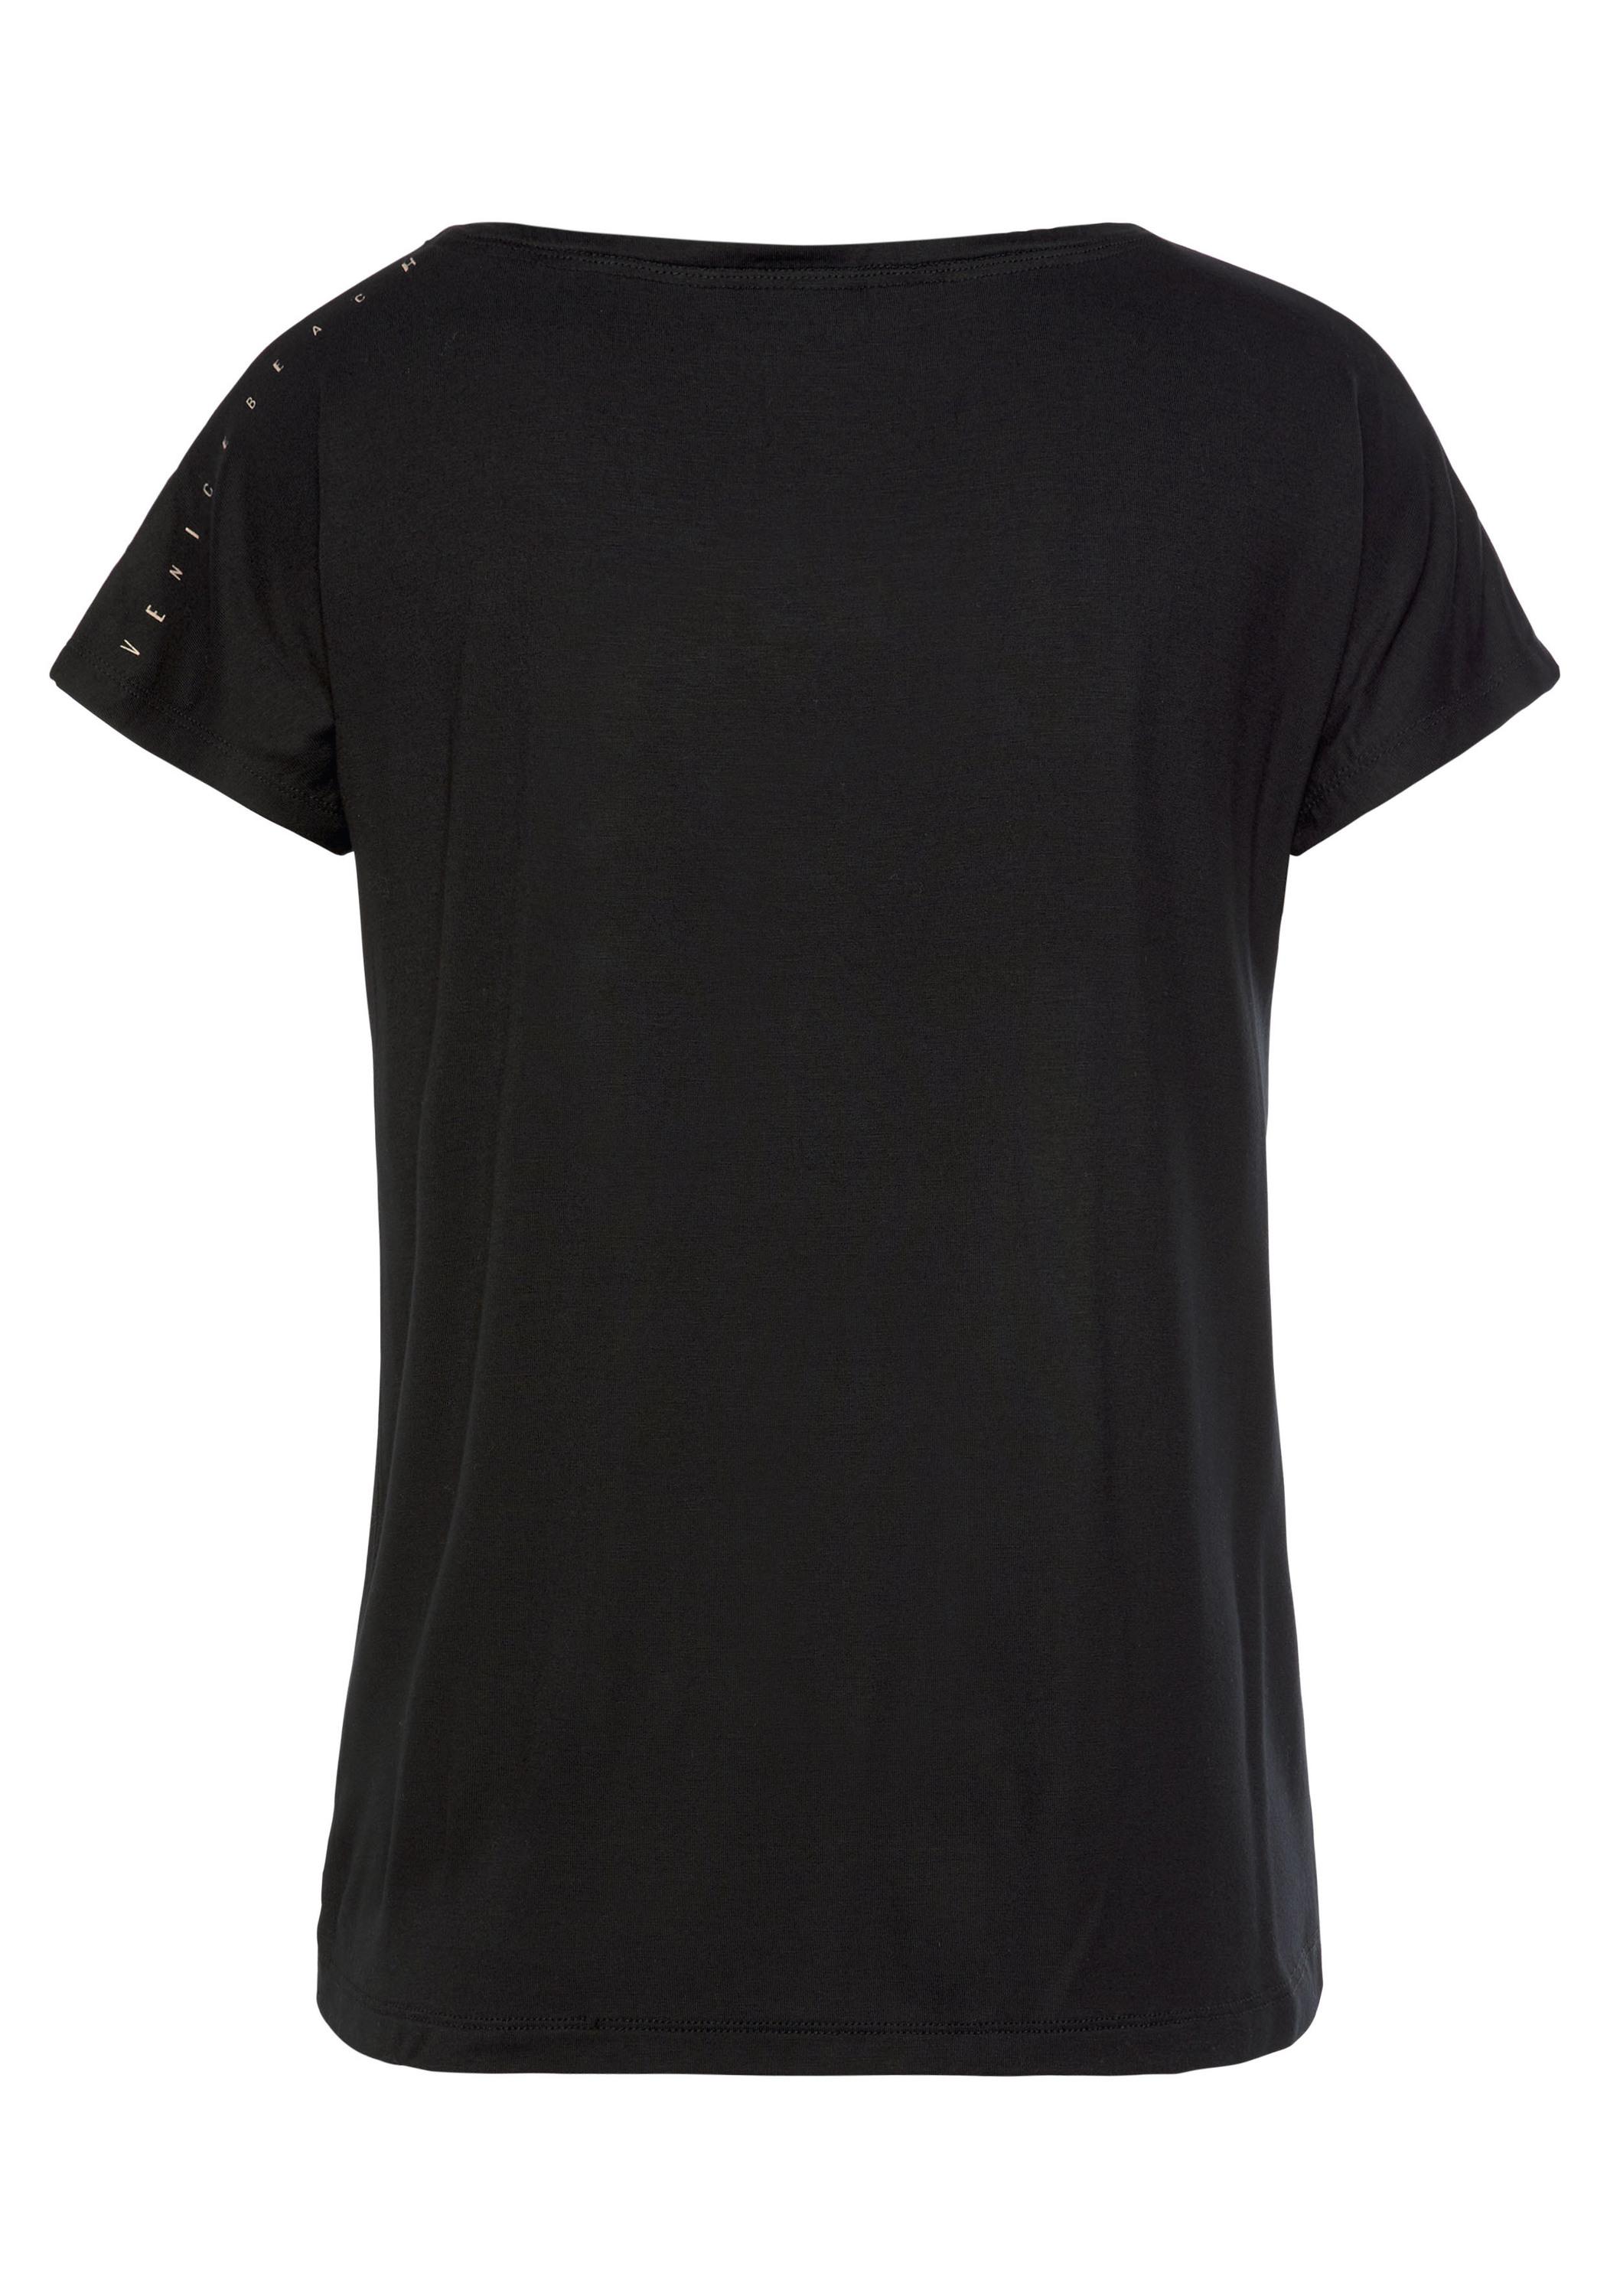 Shop von VENICE kaufen schwarz Damen Online im T-Shirt SportScheck BEACH